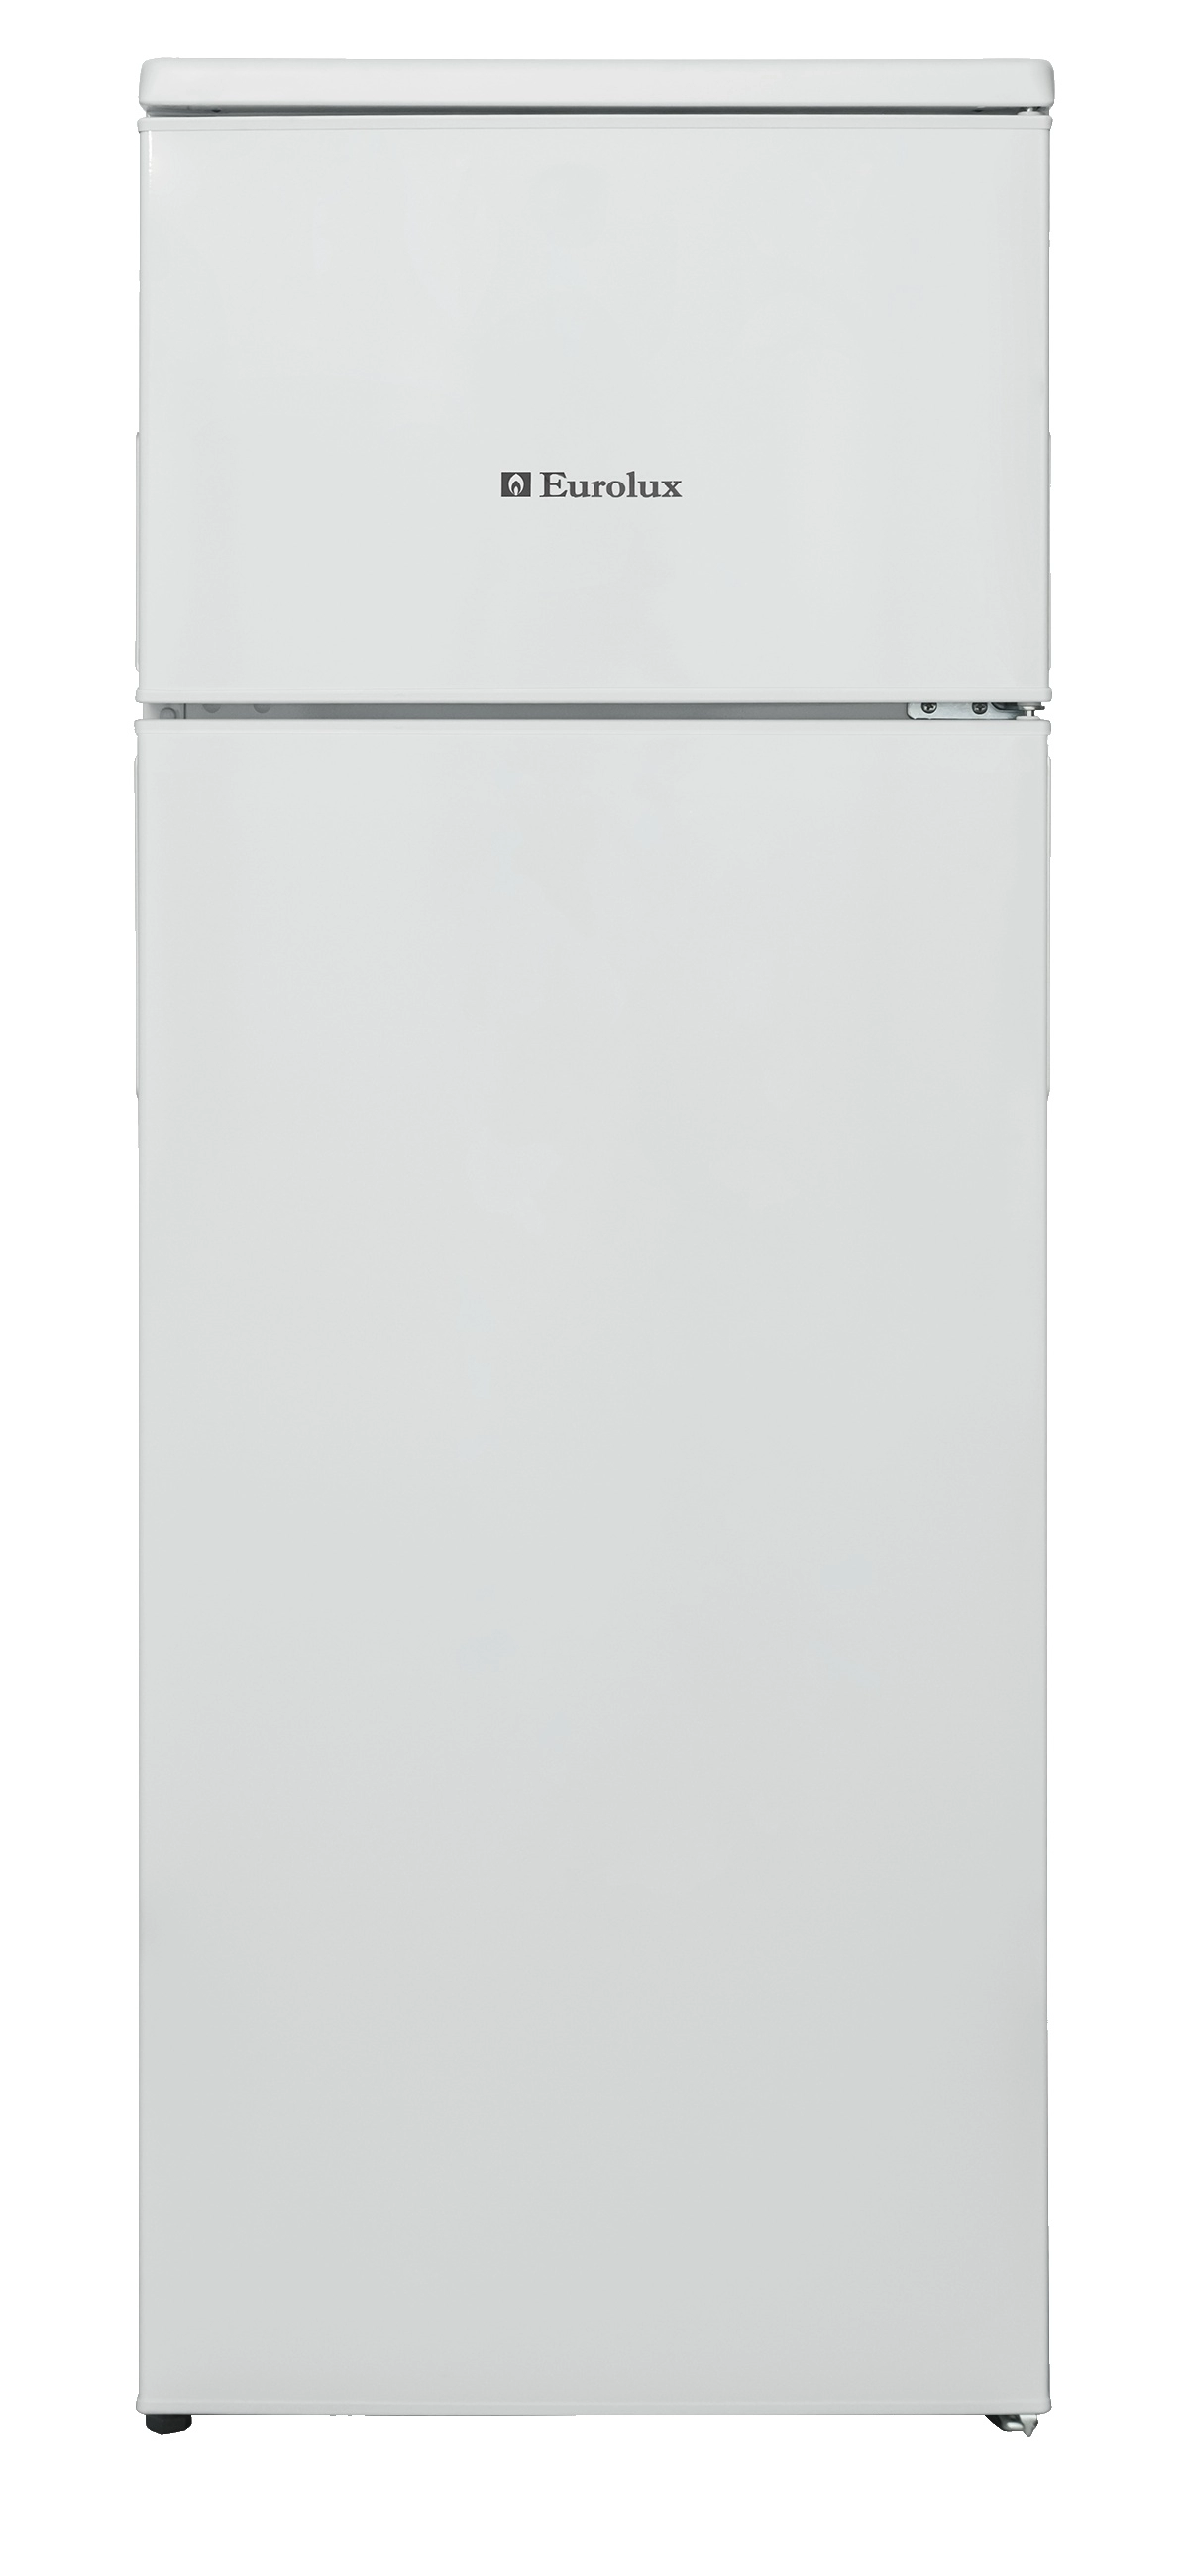 Холодильник с верхней морозильной камерой Eurolux GN263A+, 204 л, 144 см, A+, Белый